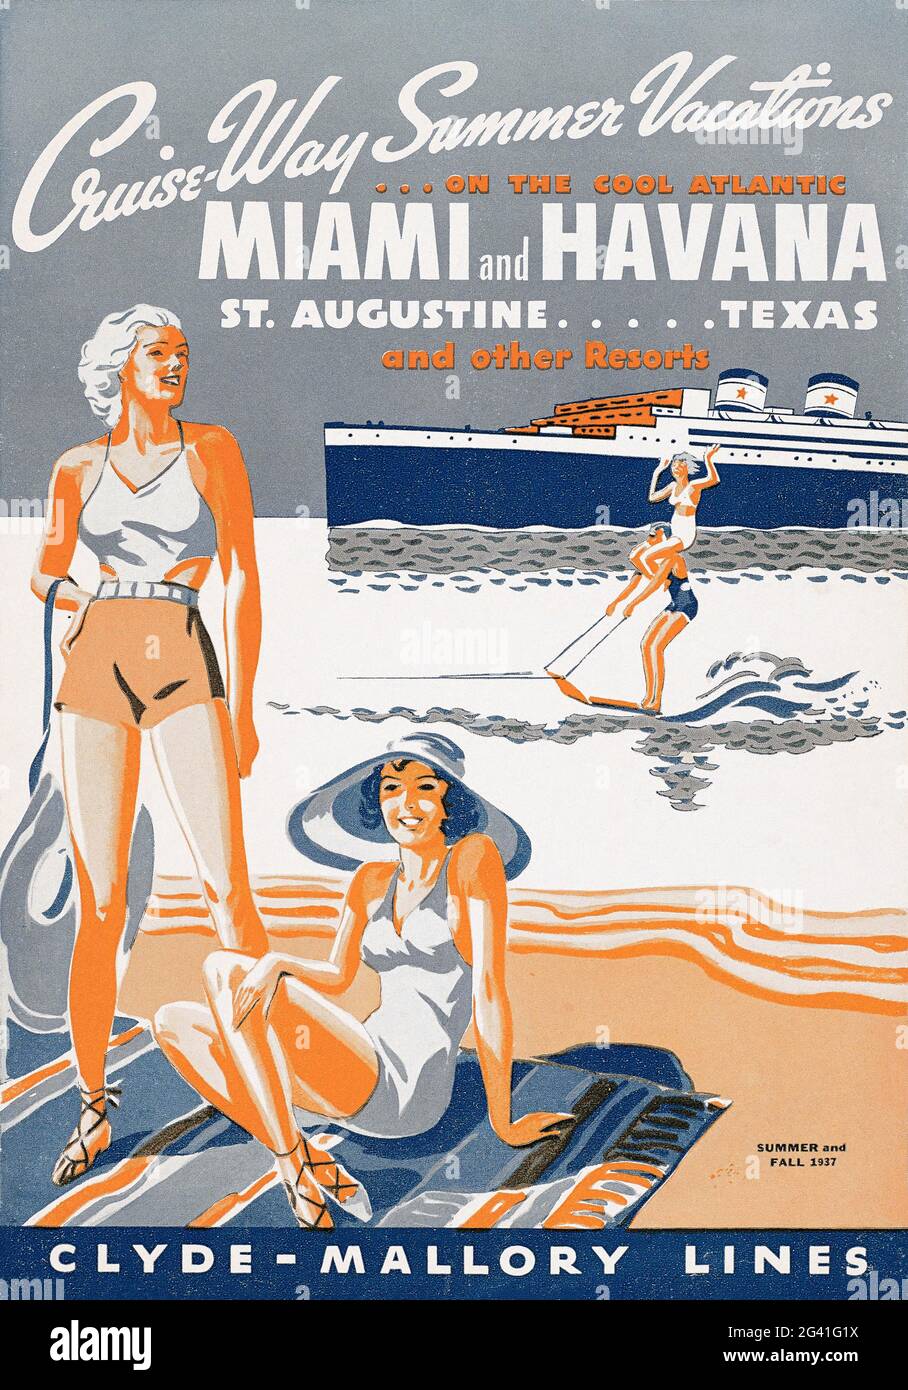 Vacances d'été sur la voie de la croisière sur l'Atlantique. Miami et la Havane, St. Augustine... Texas. Artiste inconnu. Affiche ancienne restaurée publiée en 1937 aux États-Unis. Banque D'Images